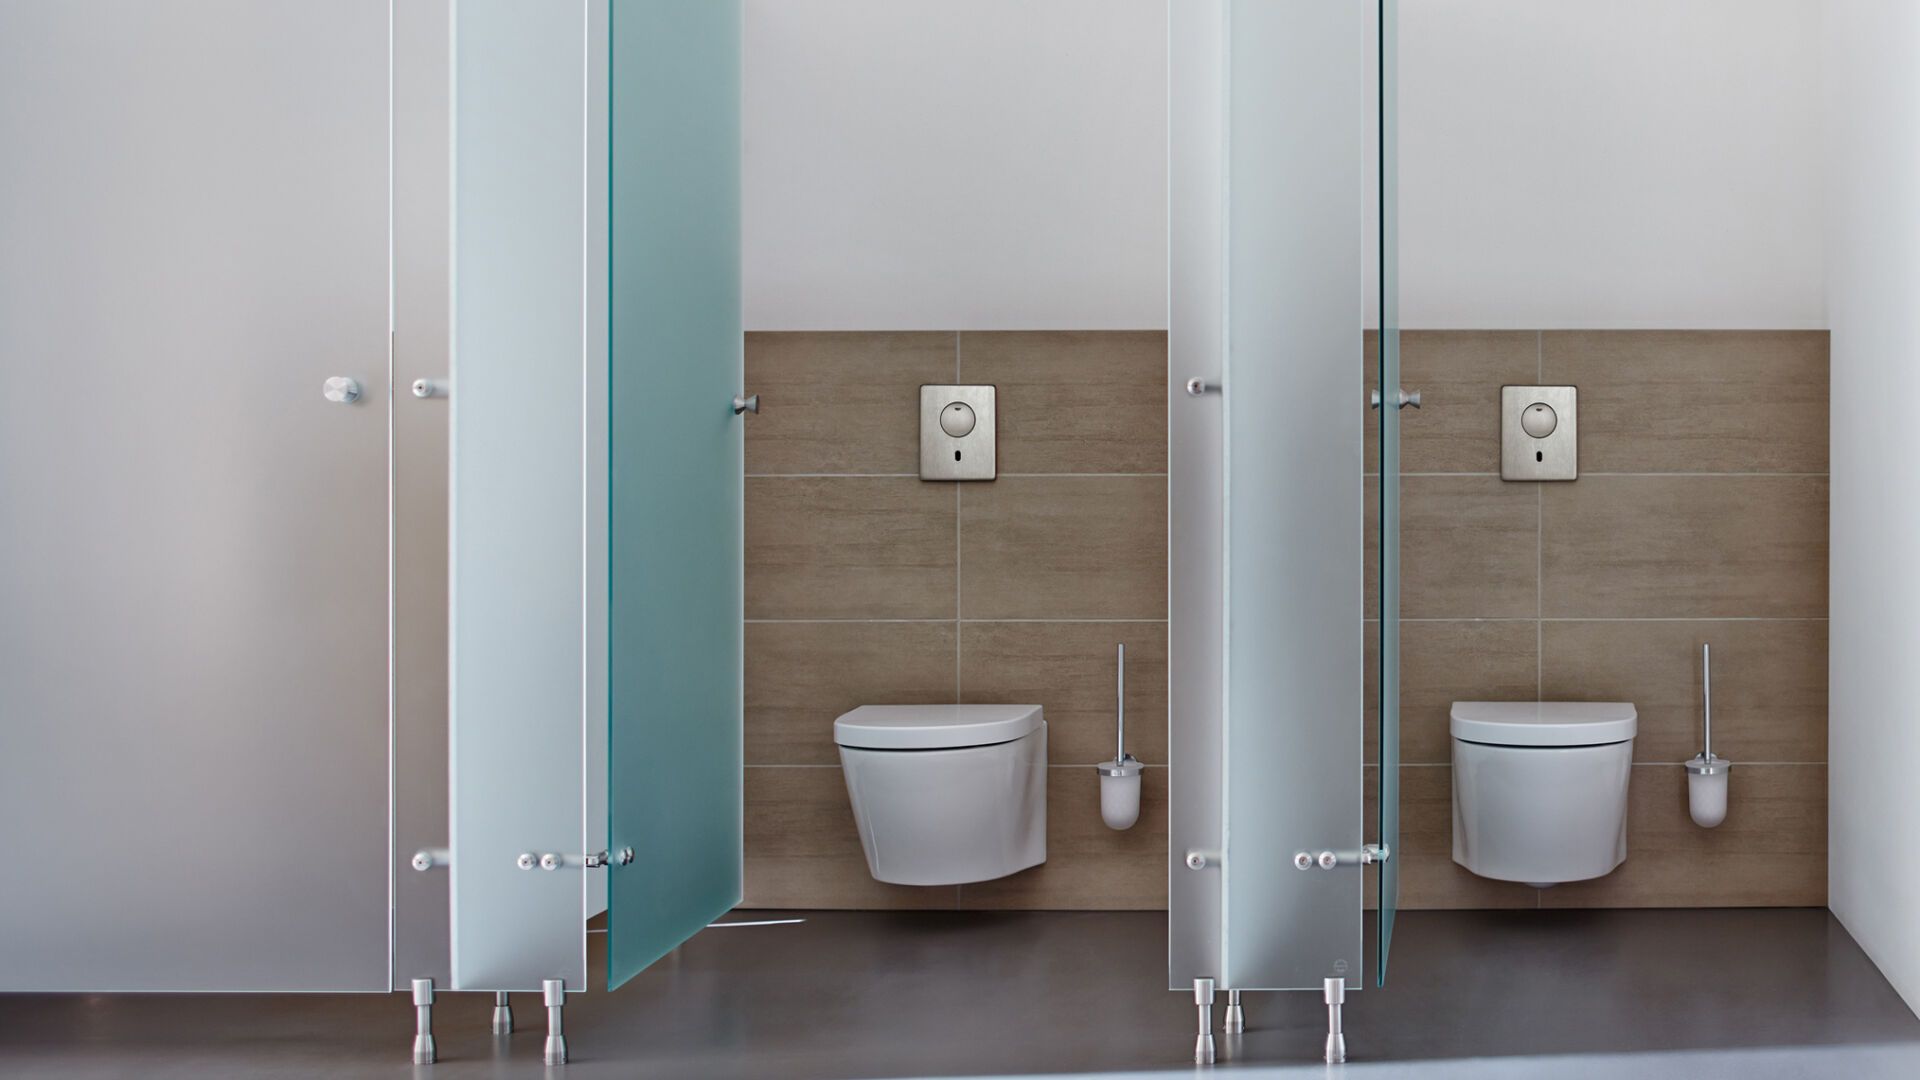 Spülkasten für WC Toiletten 3/6L Aufputzspülkasten Hotels Standard WC Neu DE 